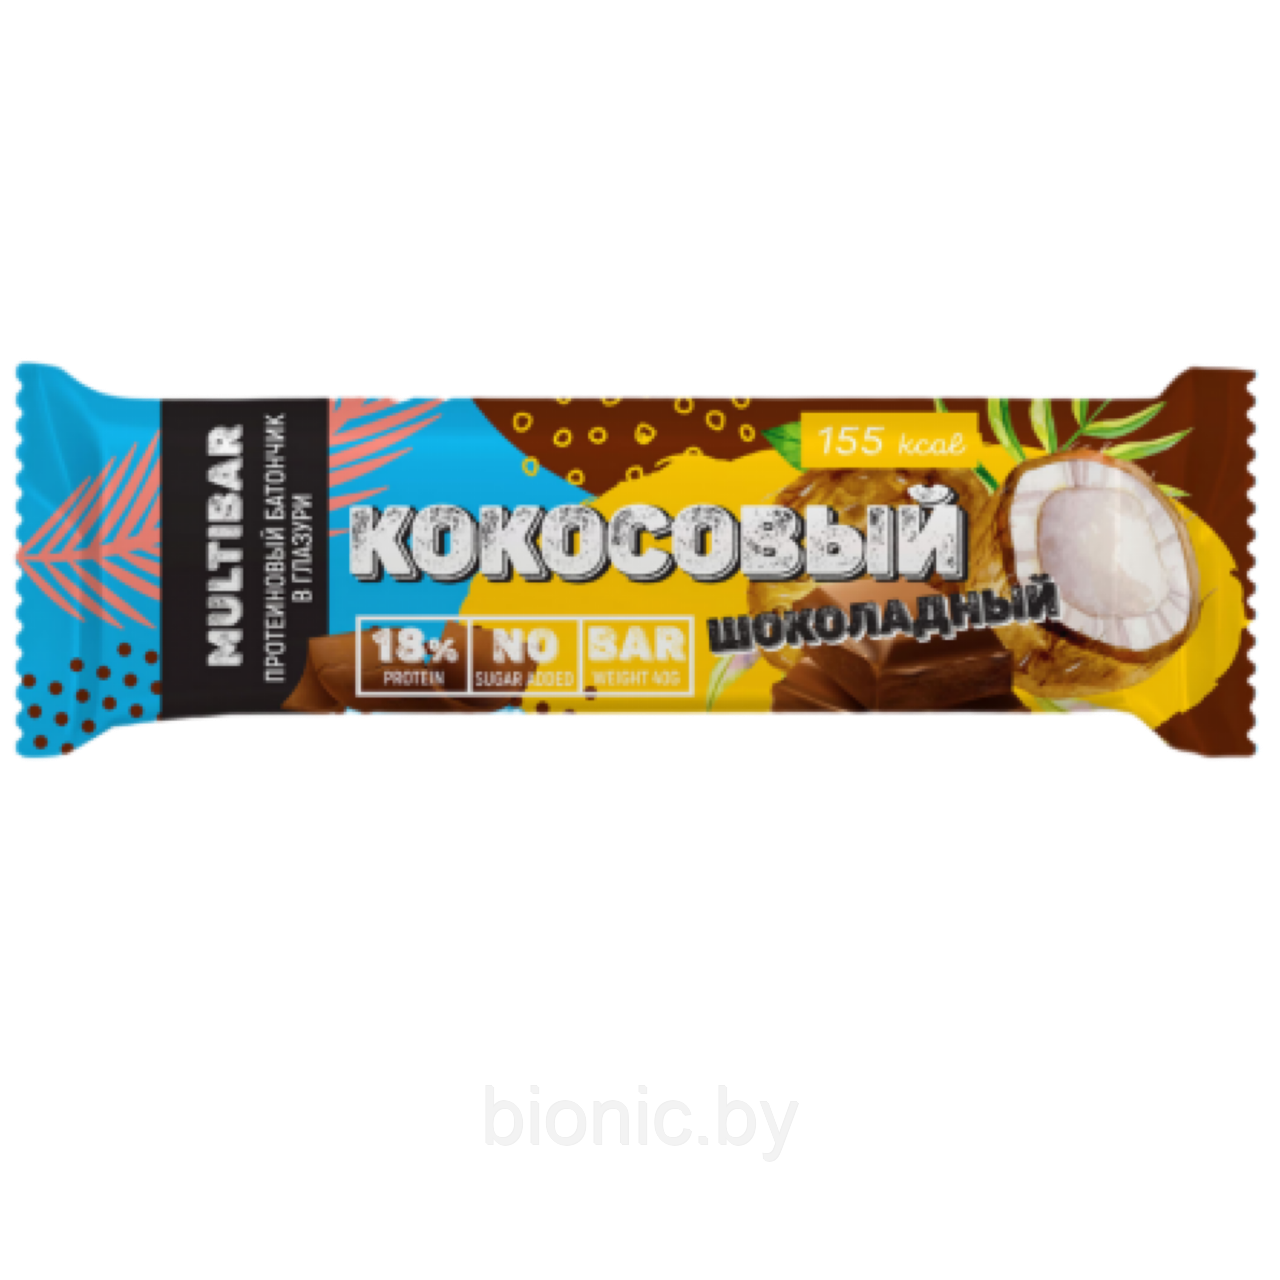 Батончик высокобелковый глазированный Кокосовый шоколадный MULTIBAR без сахара (18% белка) 40гр